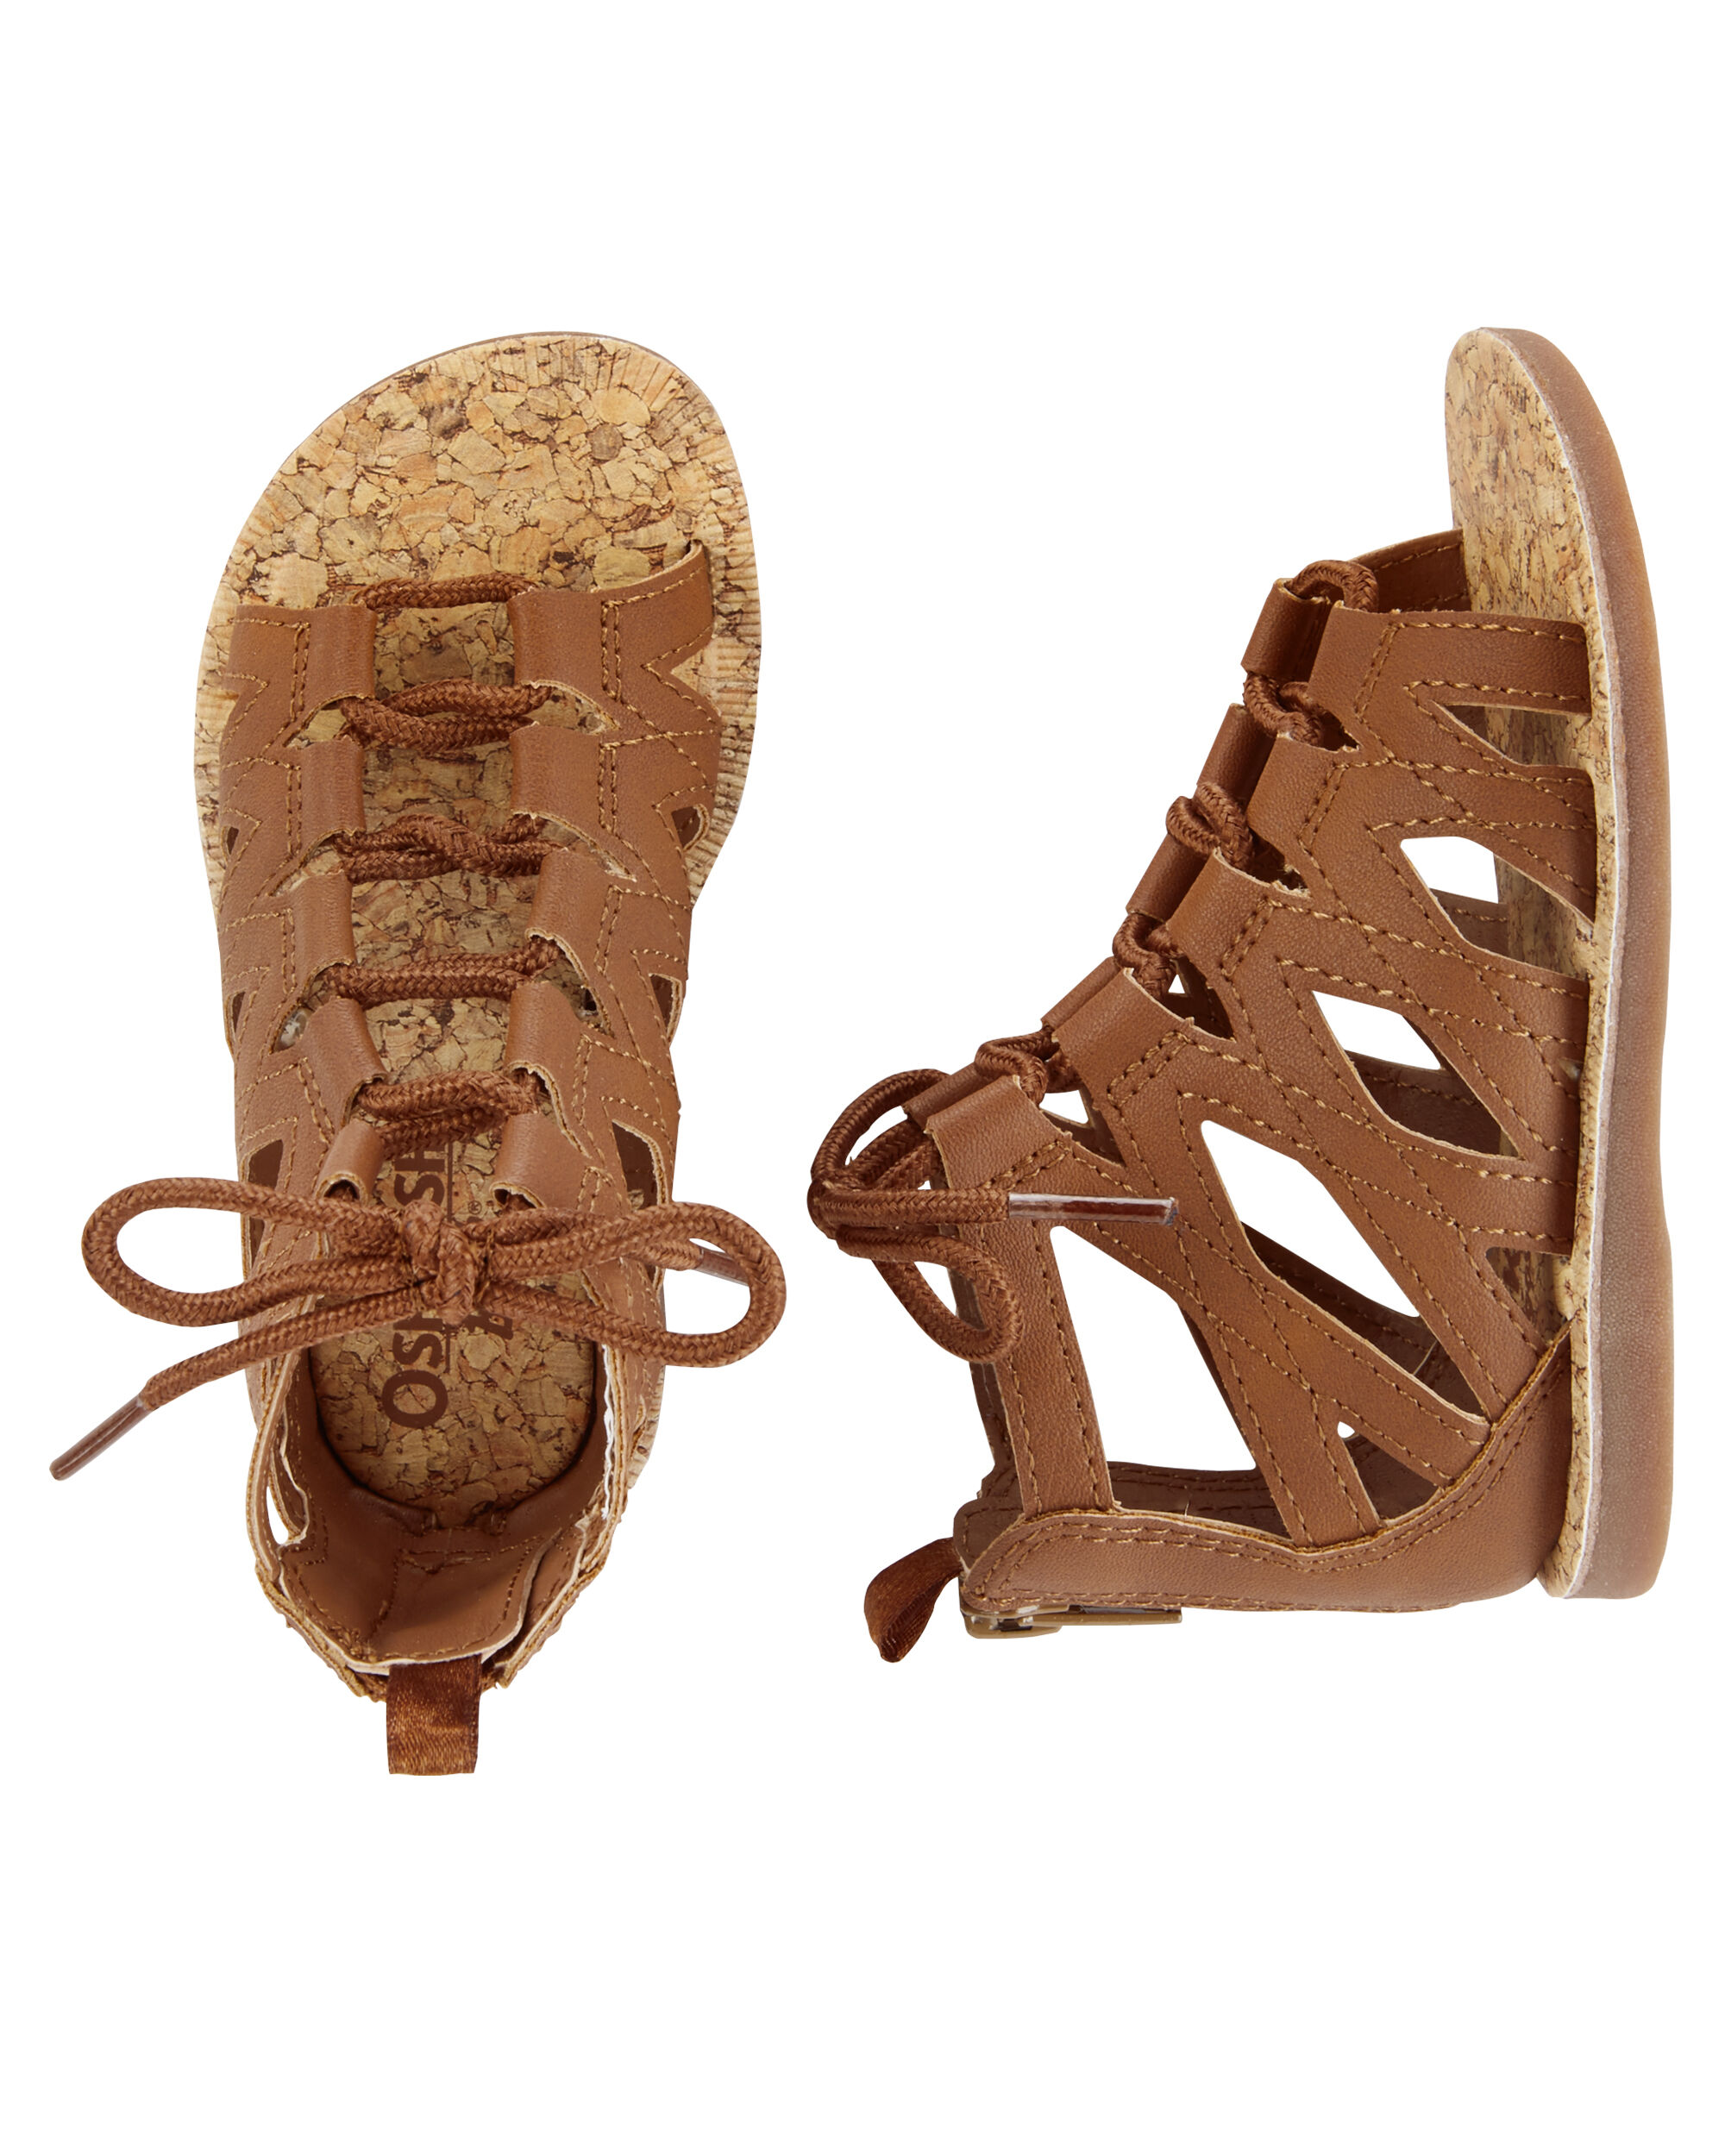 carter's gladiator sandals